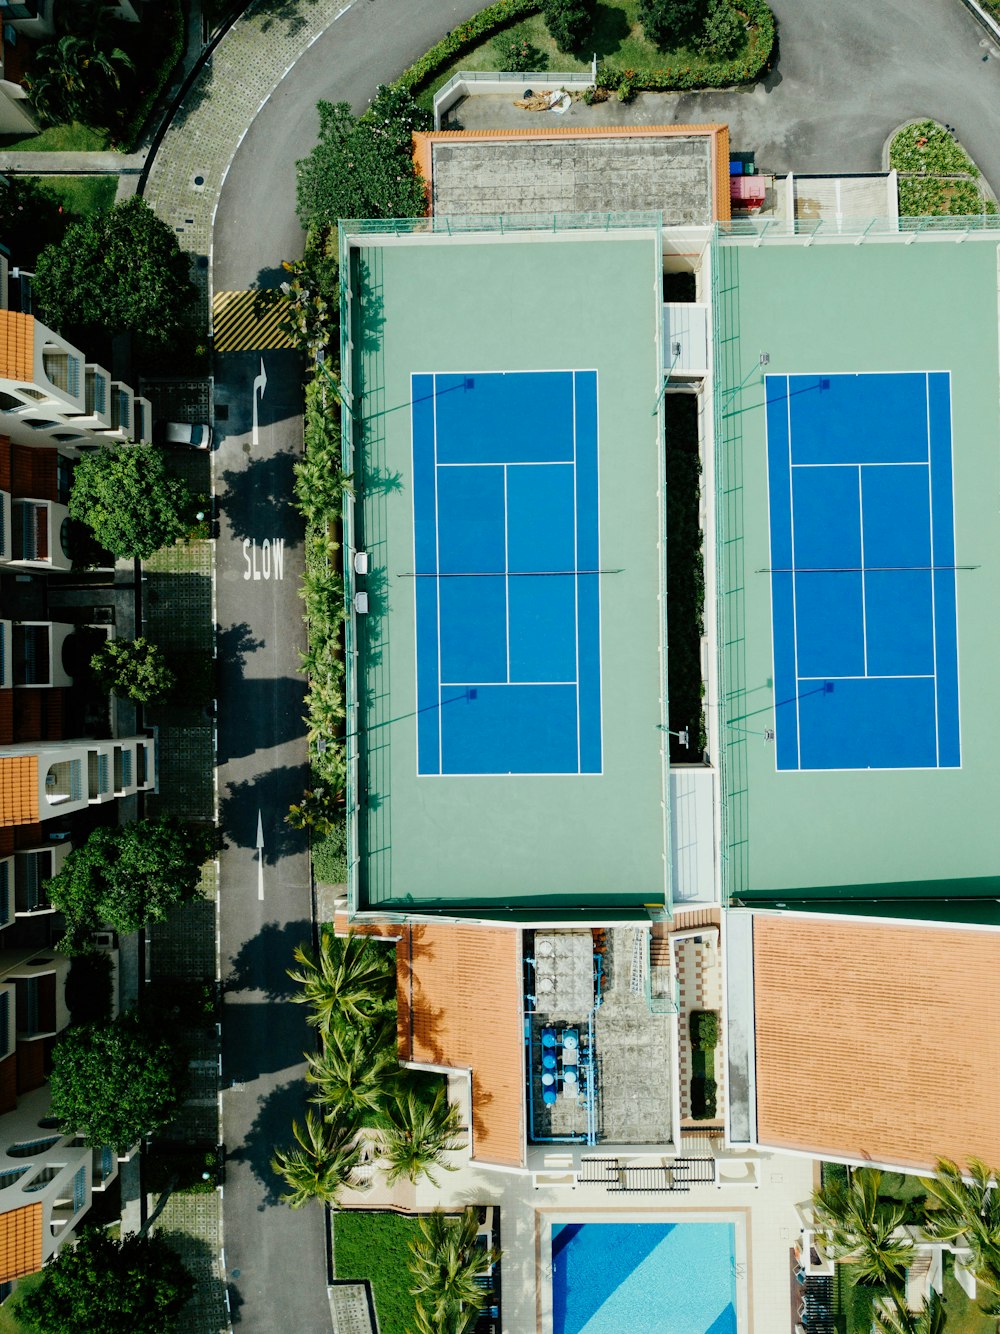 Fotografia aerea di due campi da badminton lungo la strada durante il giorno